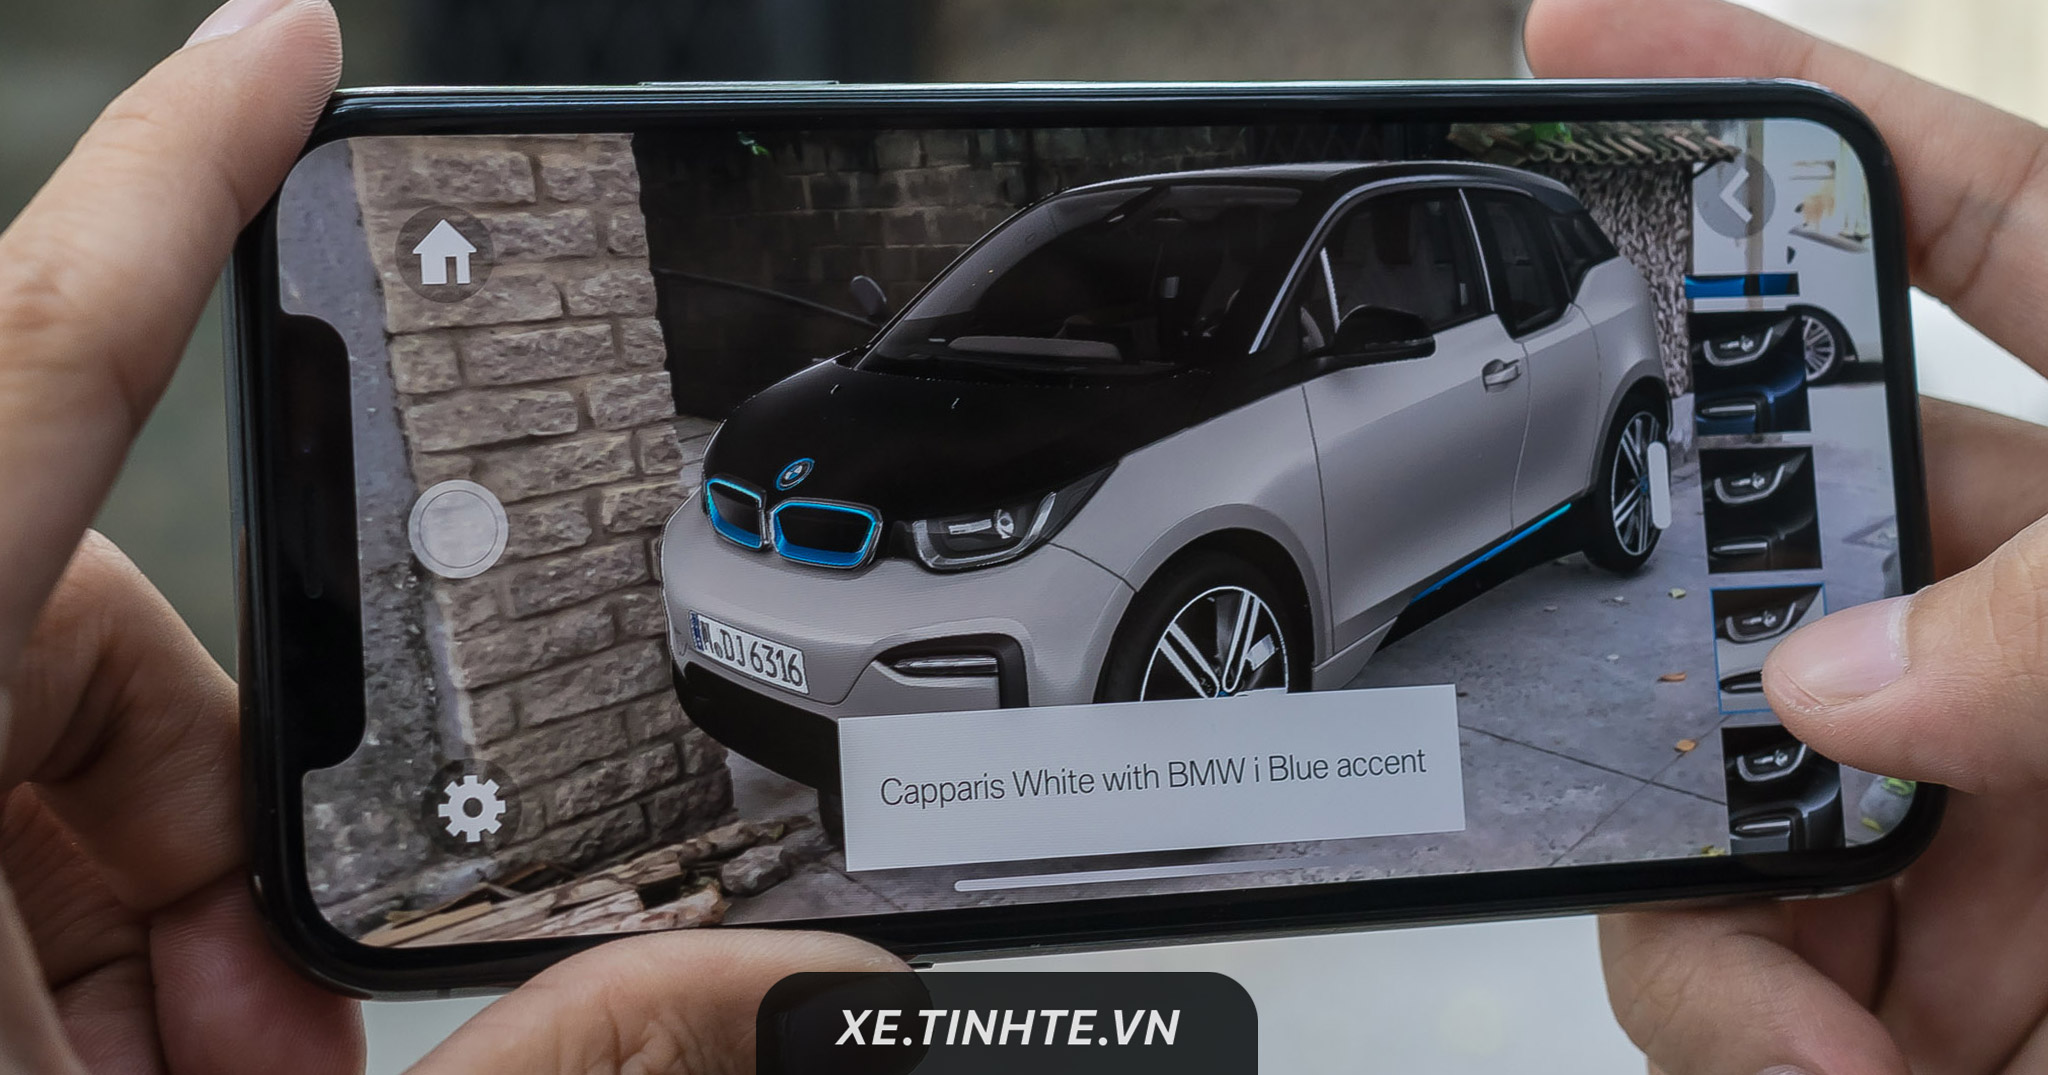 BMW i Visualizer: App tăng cường thực tế ảo, xem xe BMW bất cứ đâu, chọn nội ngoại thất tuỳ thích